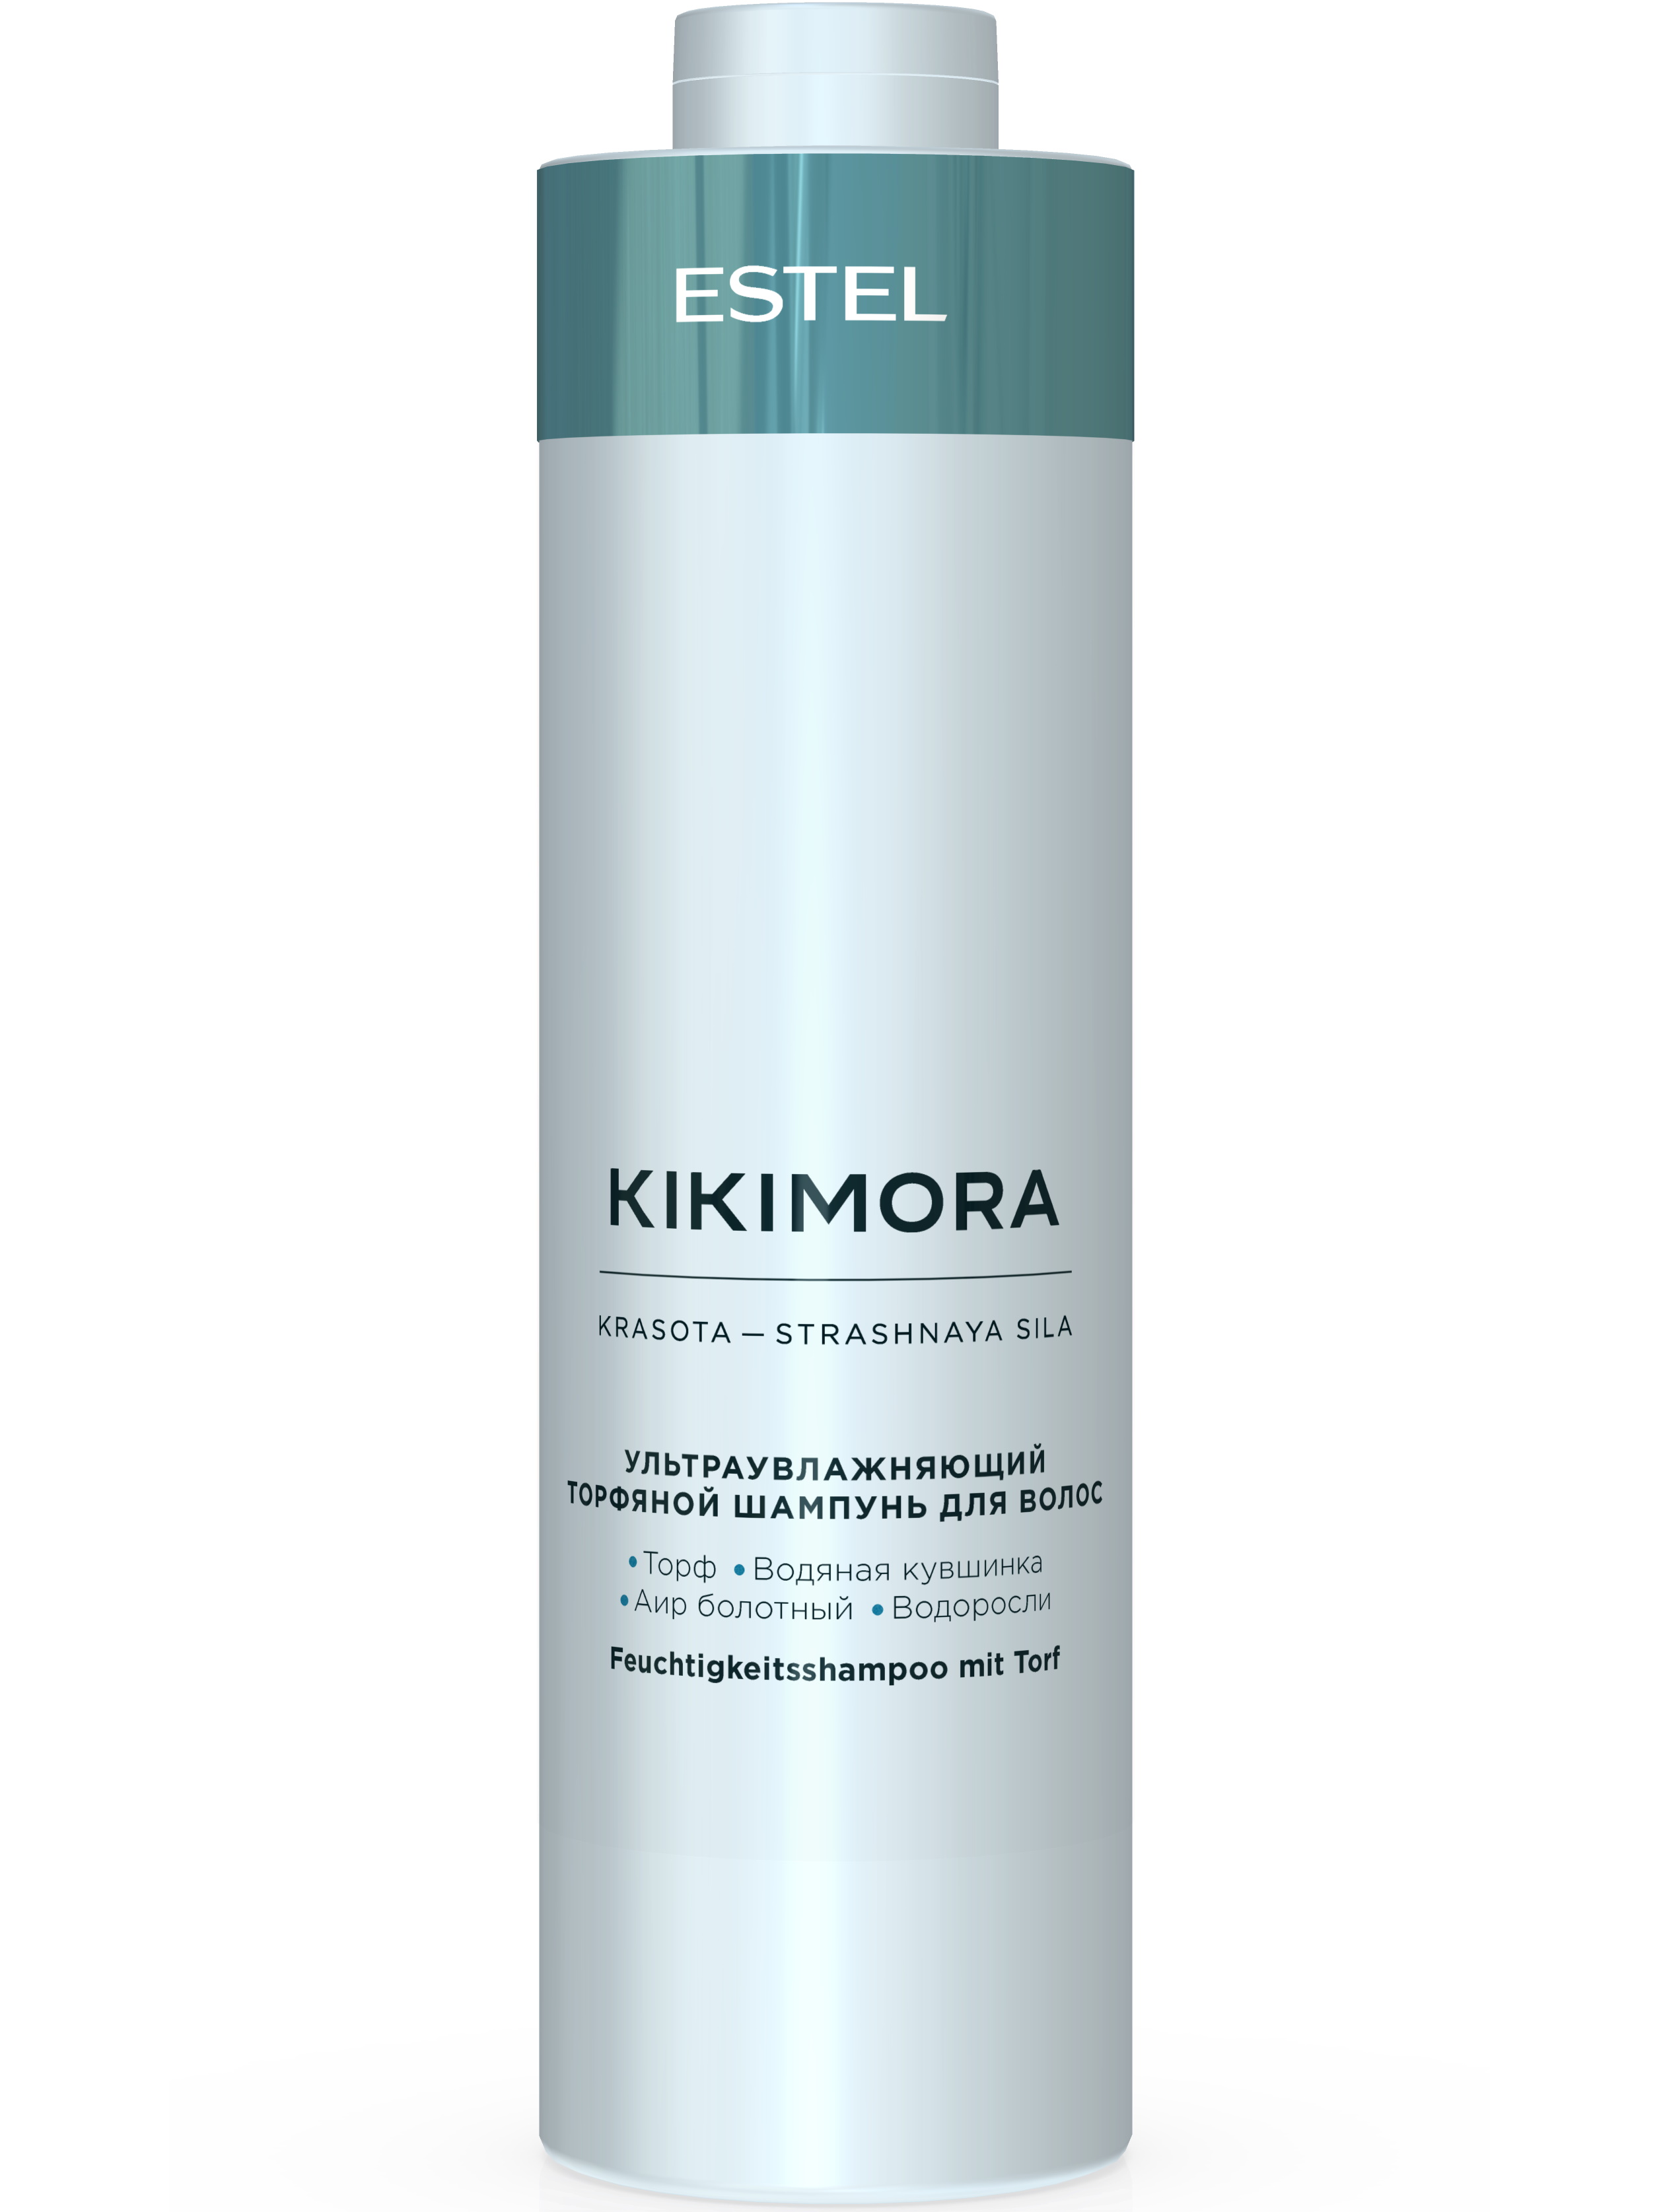 фото Estel kikimora - шампунь ультраувлажняющий торфяной для волос, 1000мл